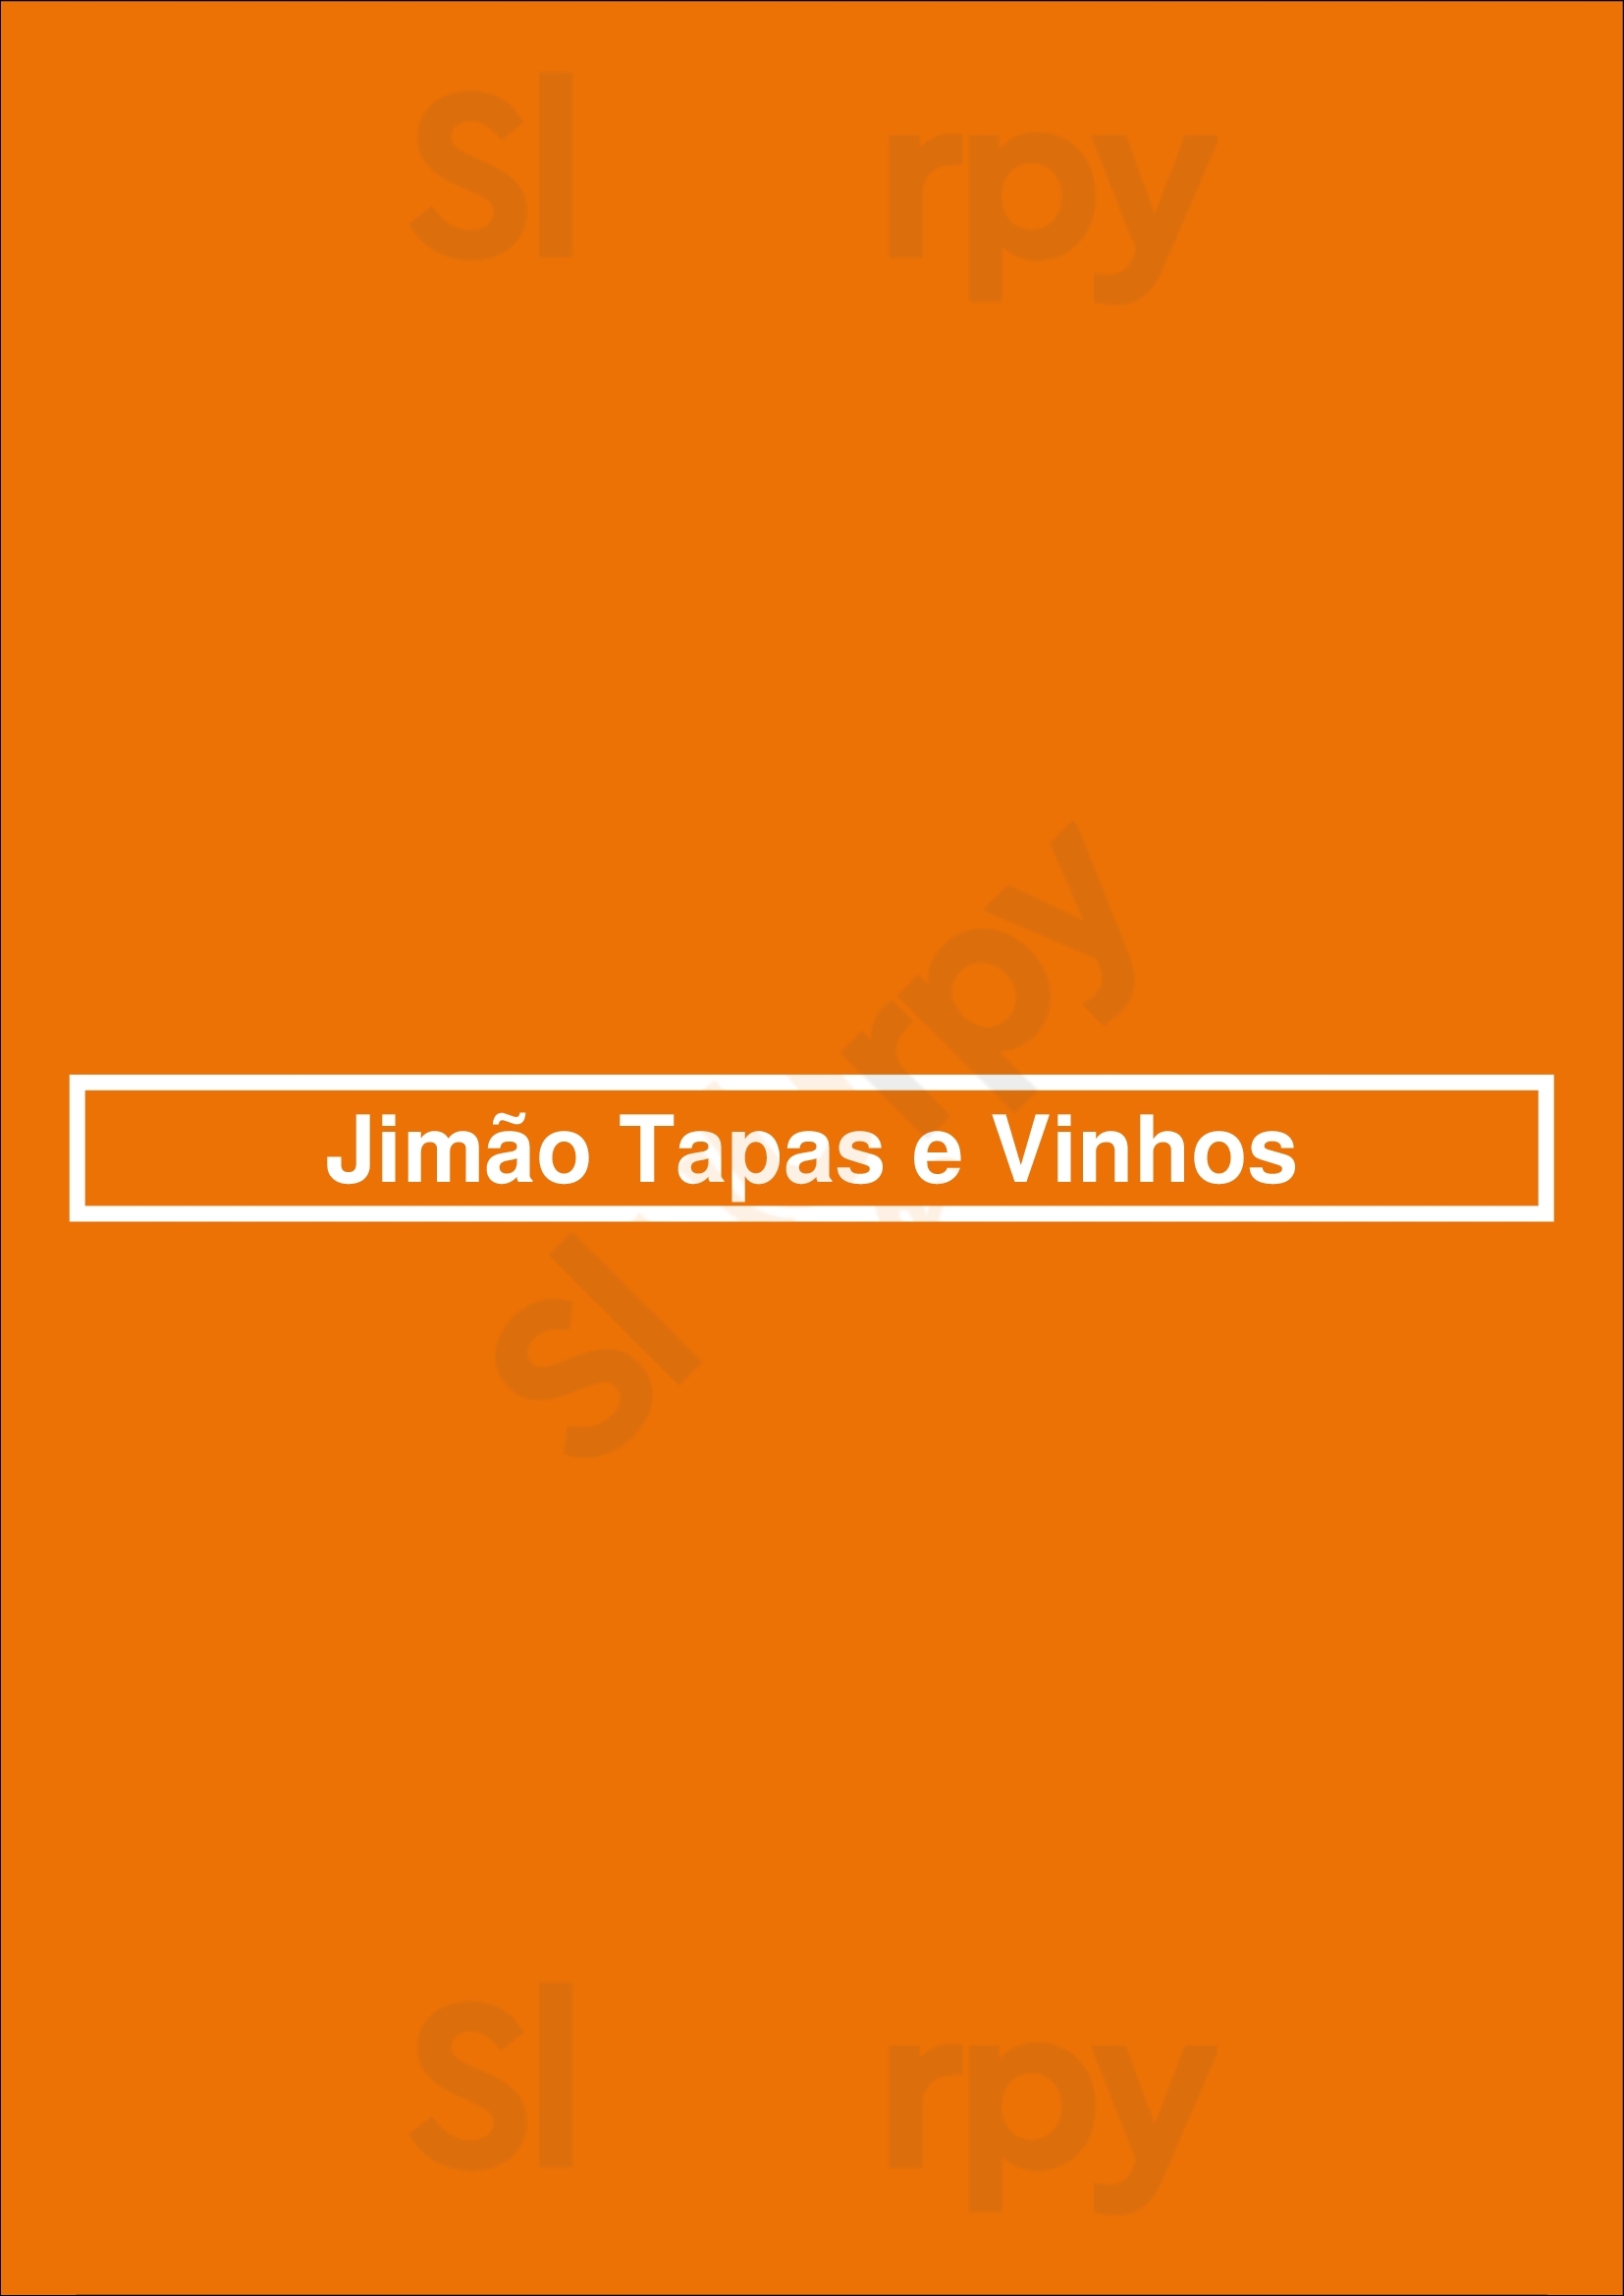 Jimão Tapas E Vinhos Porto Menu - 1